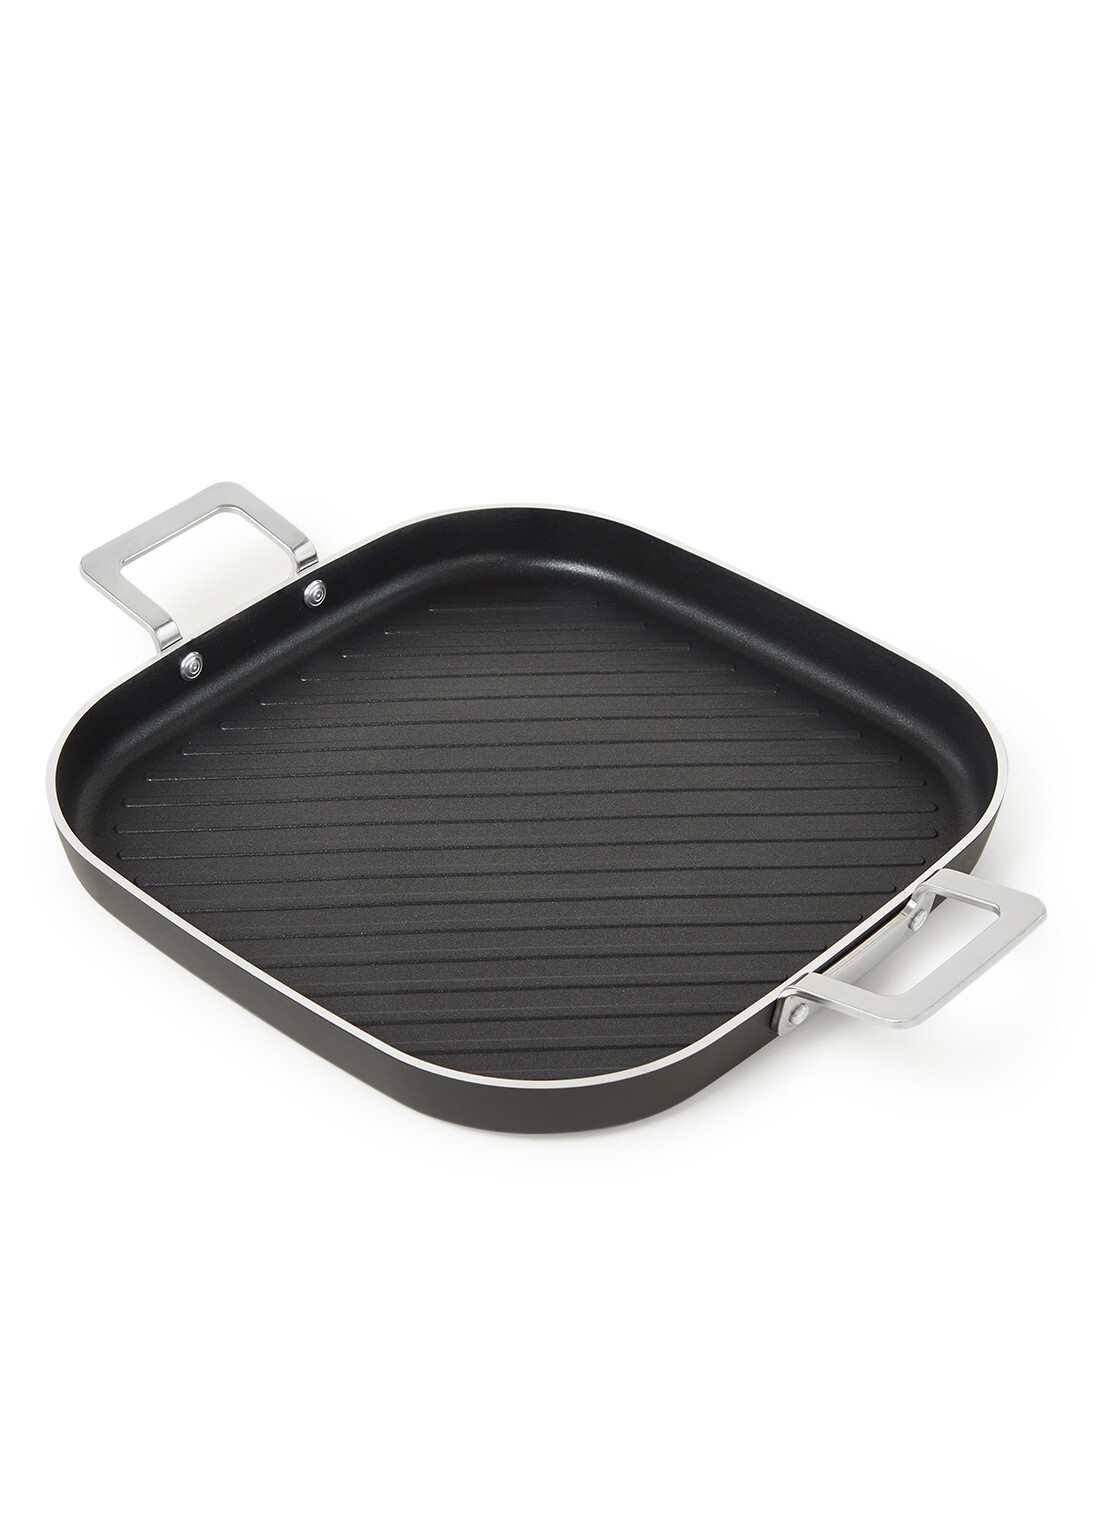 Alessi grillplaat Pots and pans zwart 29 x 29 cm